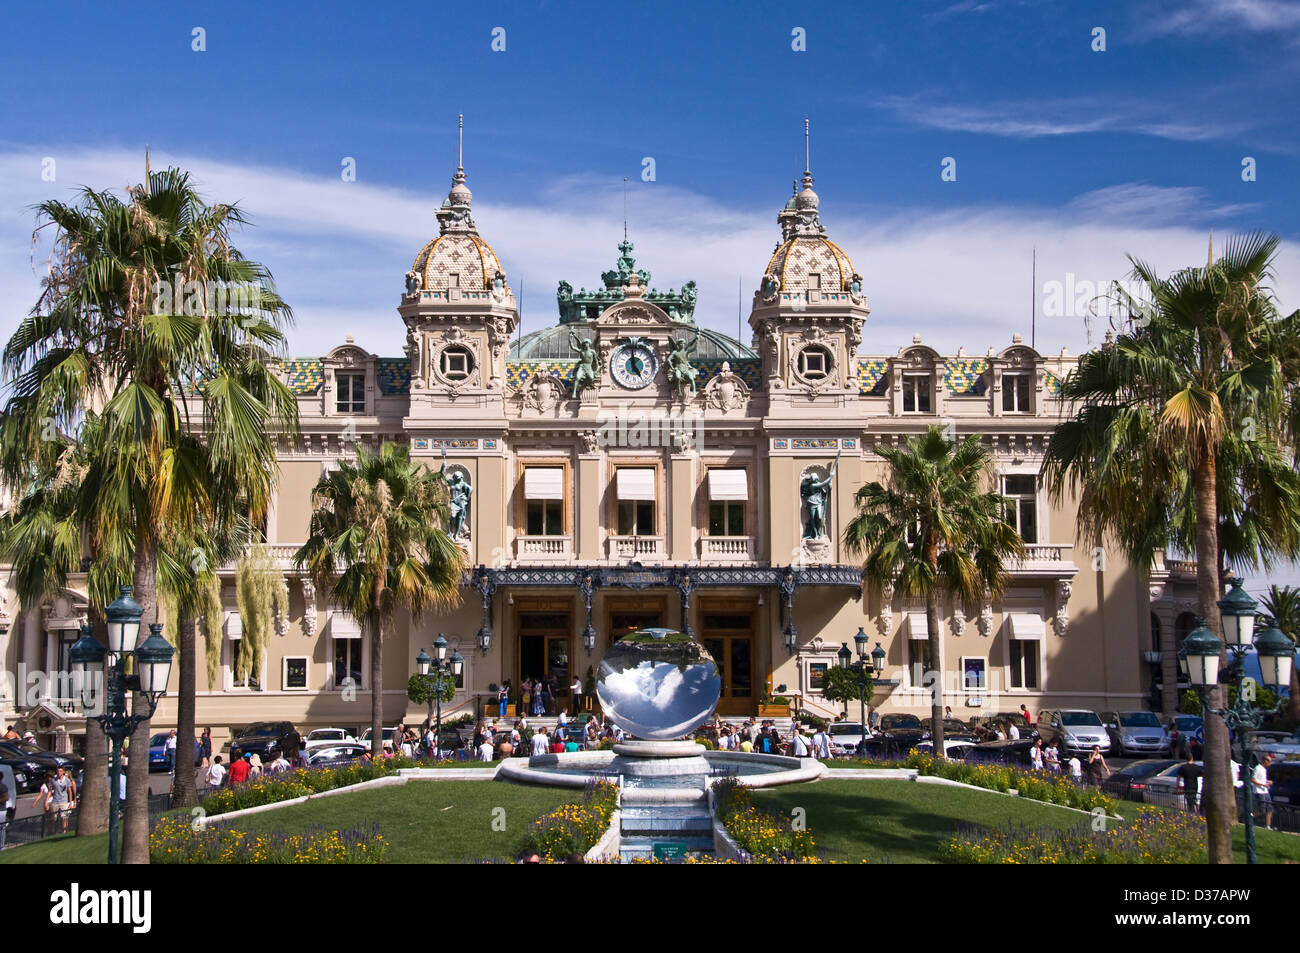 Casino of Monte-Carlo - Monaco Stock Photo